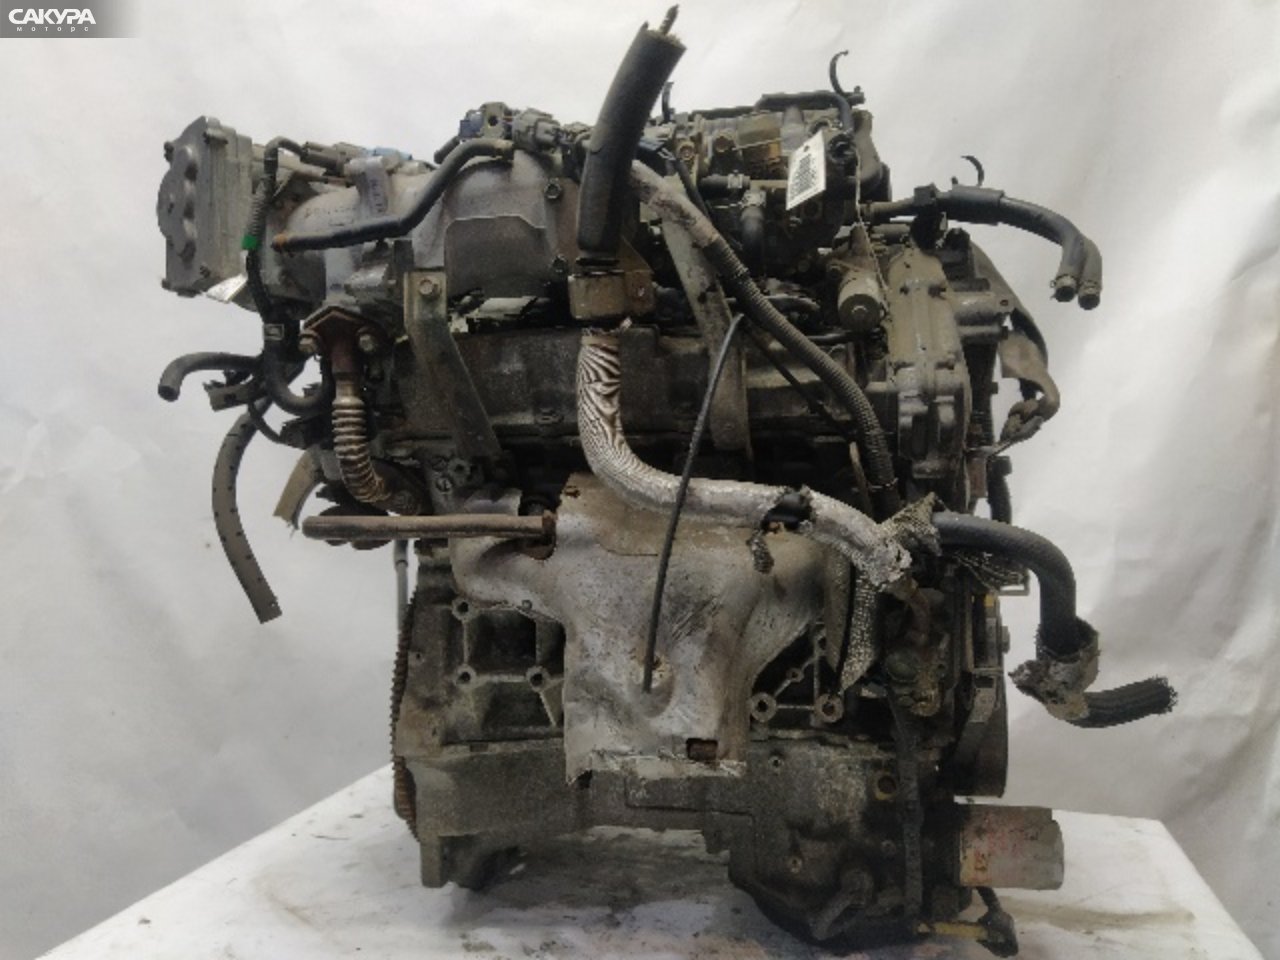 Двигатель Nissan Cefiro PA33 VQ25DD: купить в Сакура Красноярск.